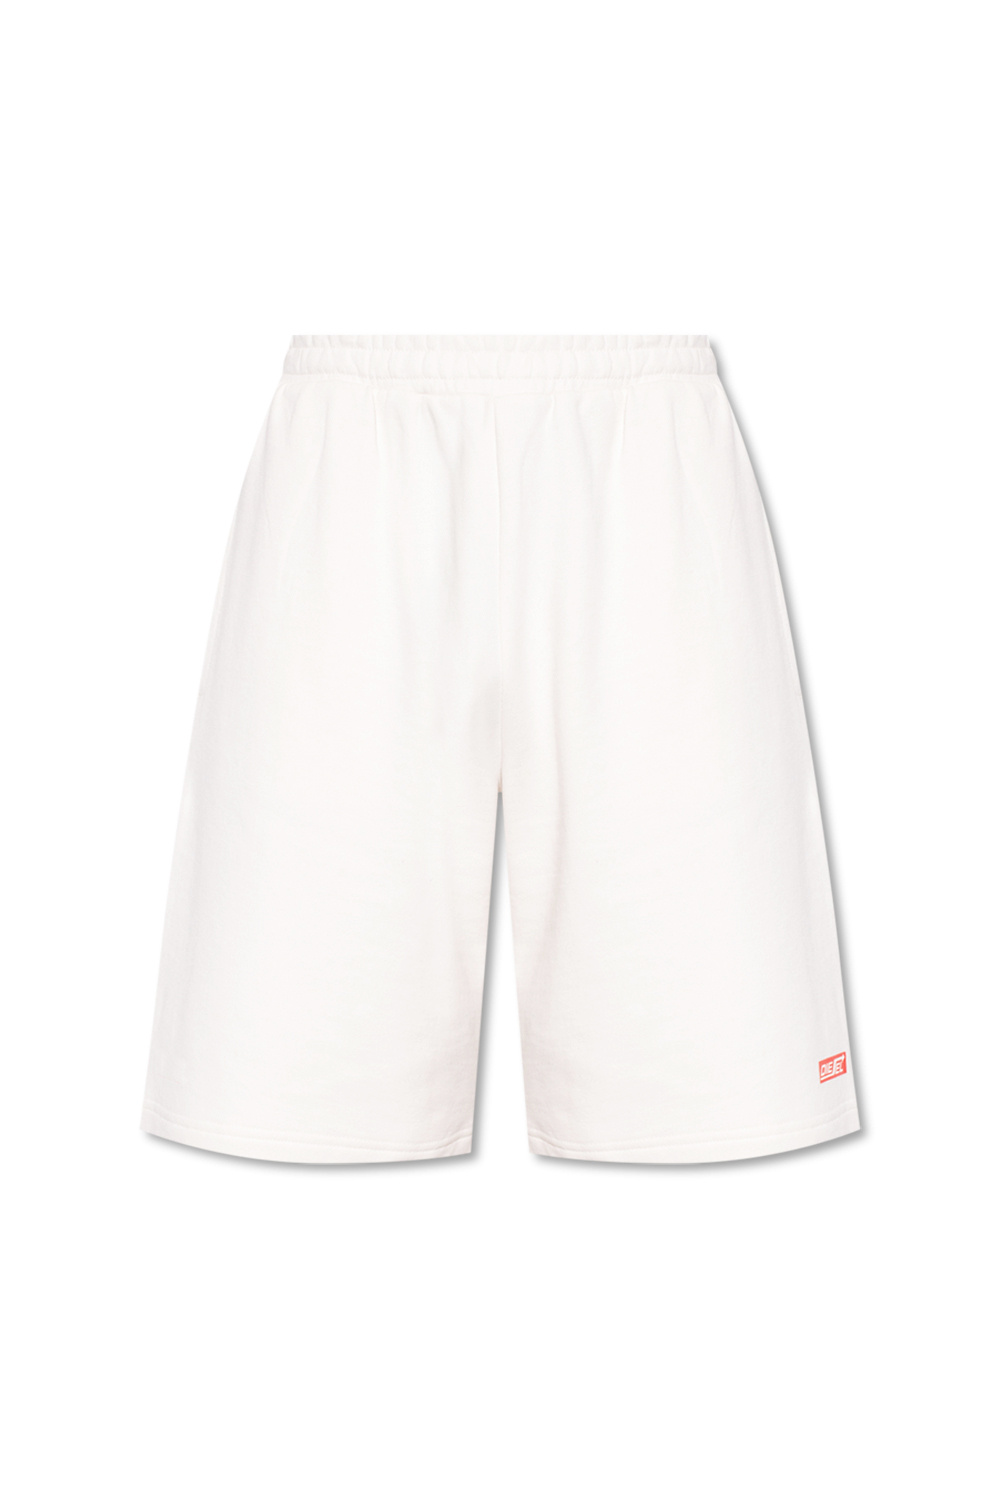 Diesel ‘P-Crown’ cotton shorts